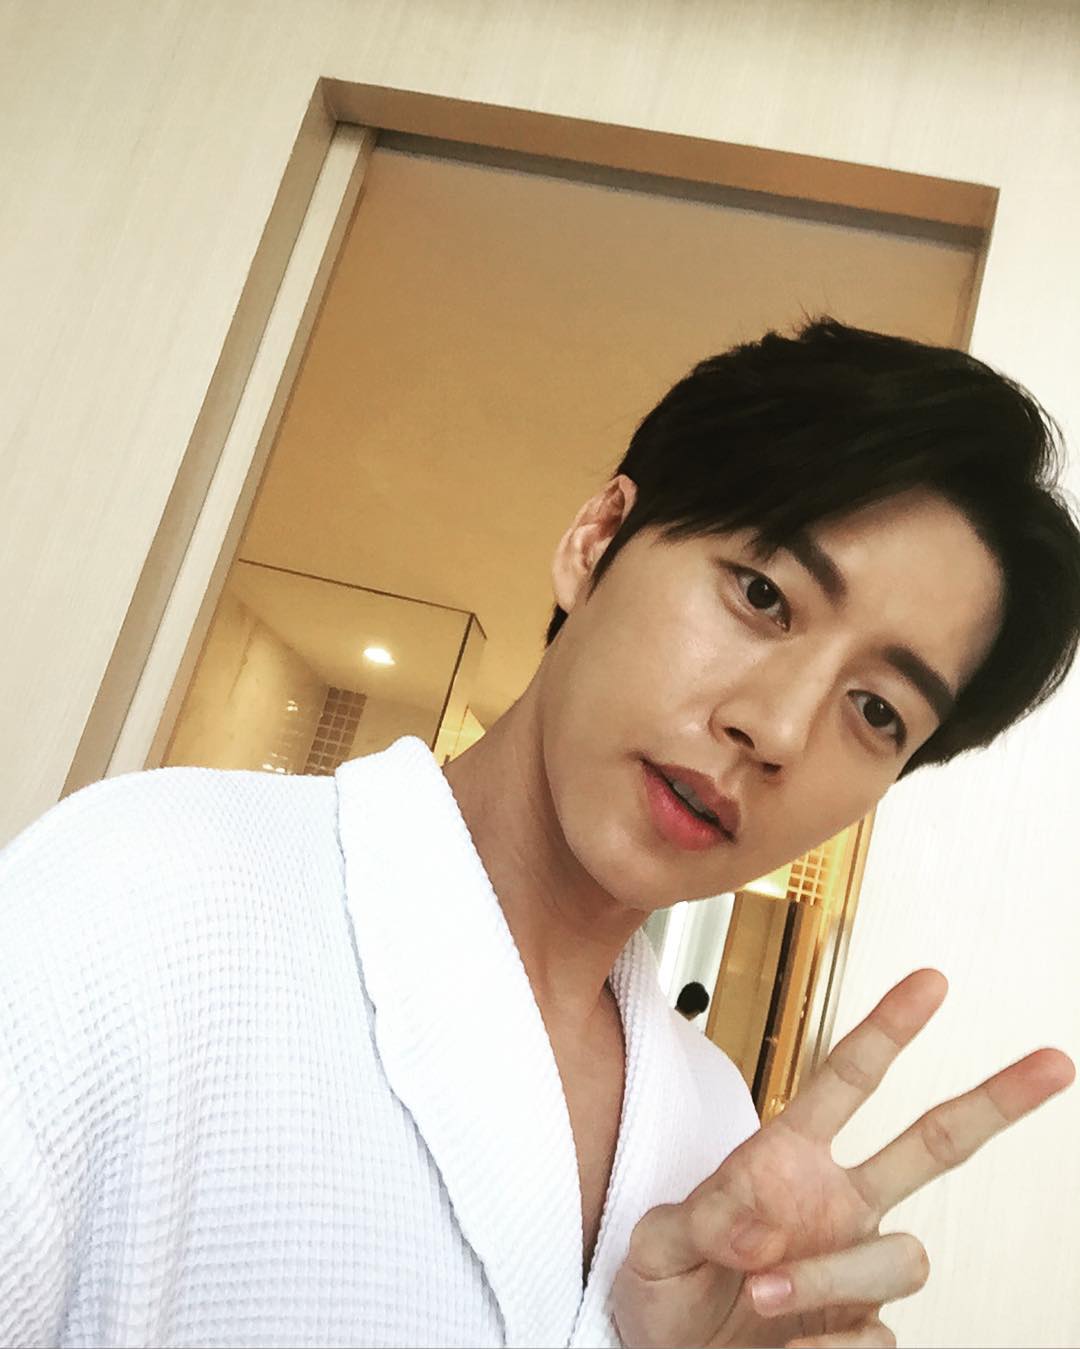 박해진 - Park Hae Jin on X: "160419 koreadispatch Instagram Update with Park  Hae Jin #박해진 https://t.co/O4qGc89wYs" / X